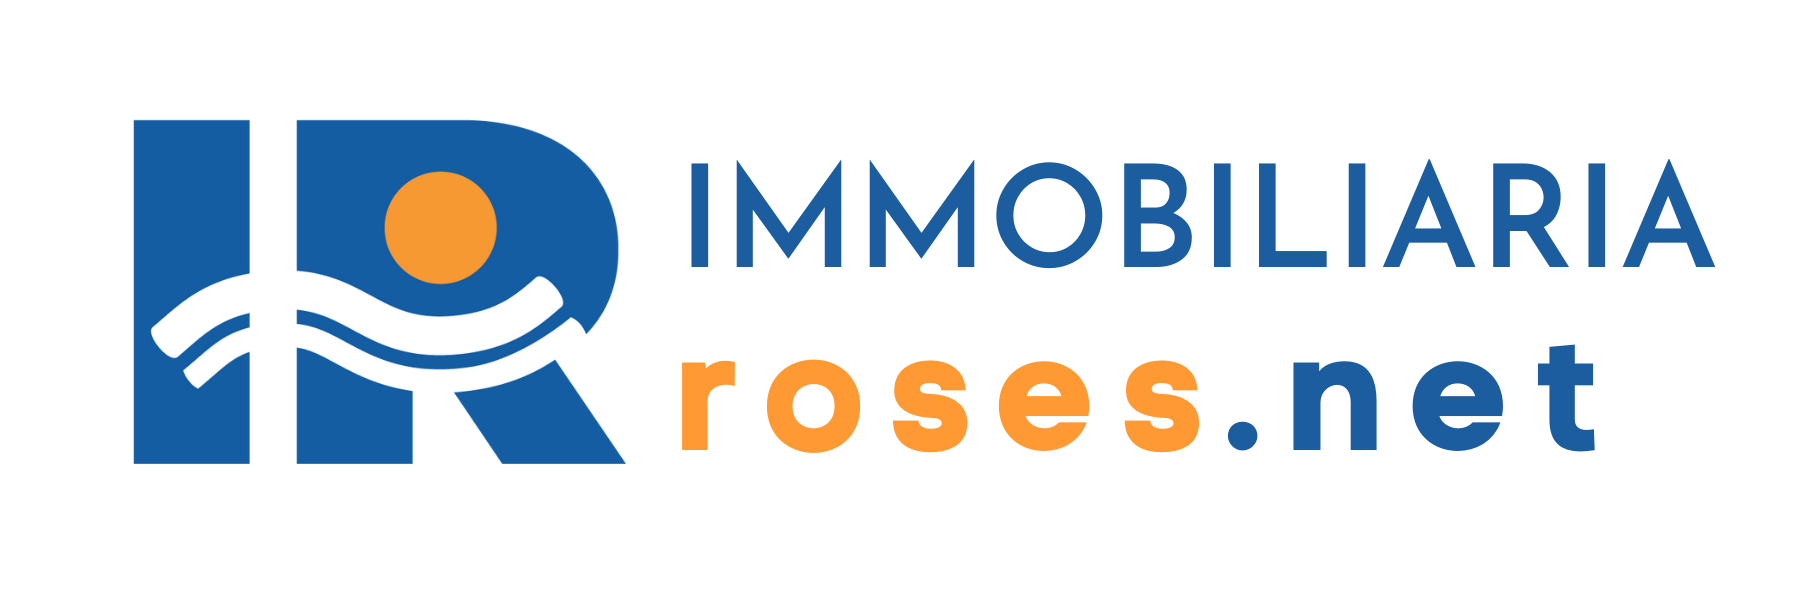 Inmobiliaria Immo Roses.net - Alquiler Temporal Costa Brava